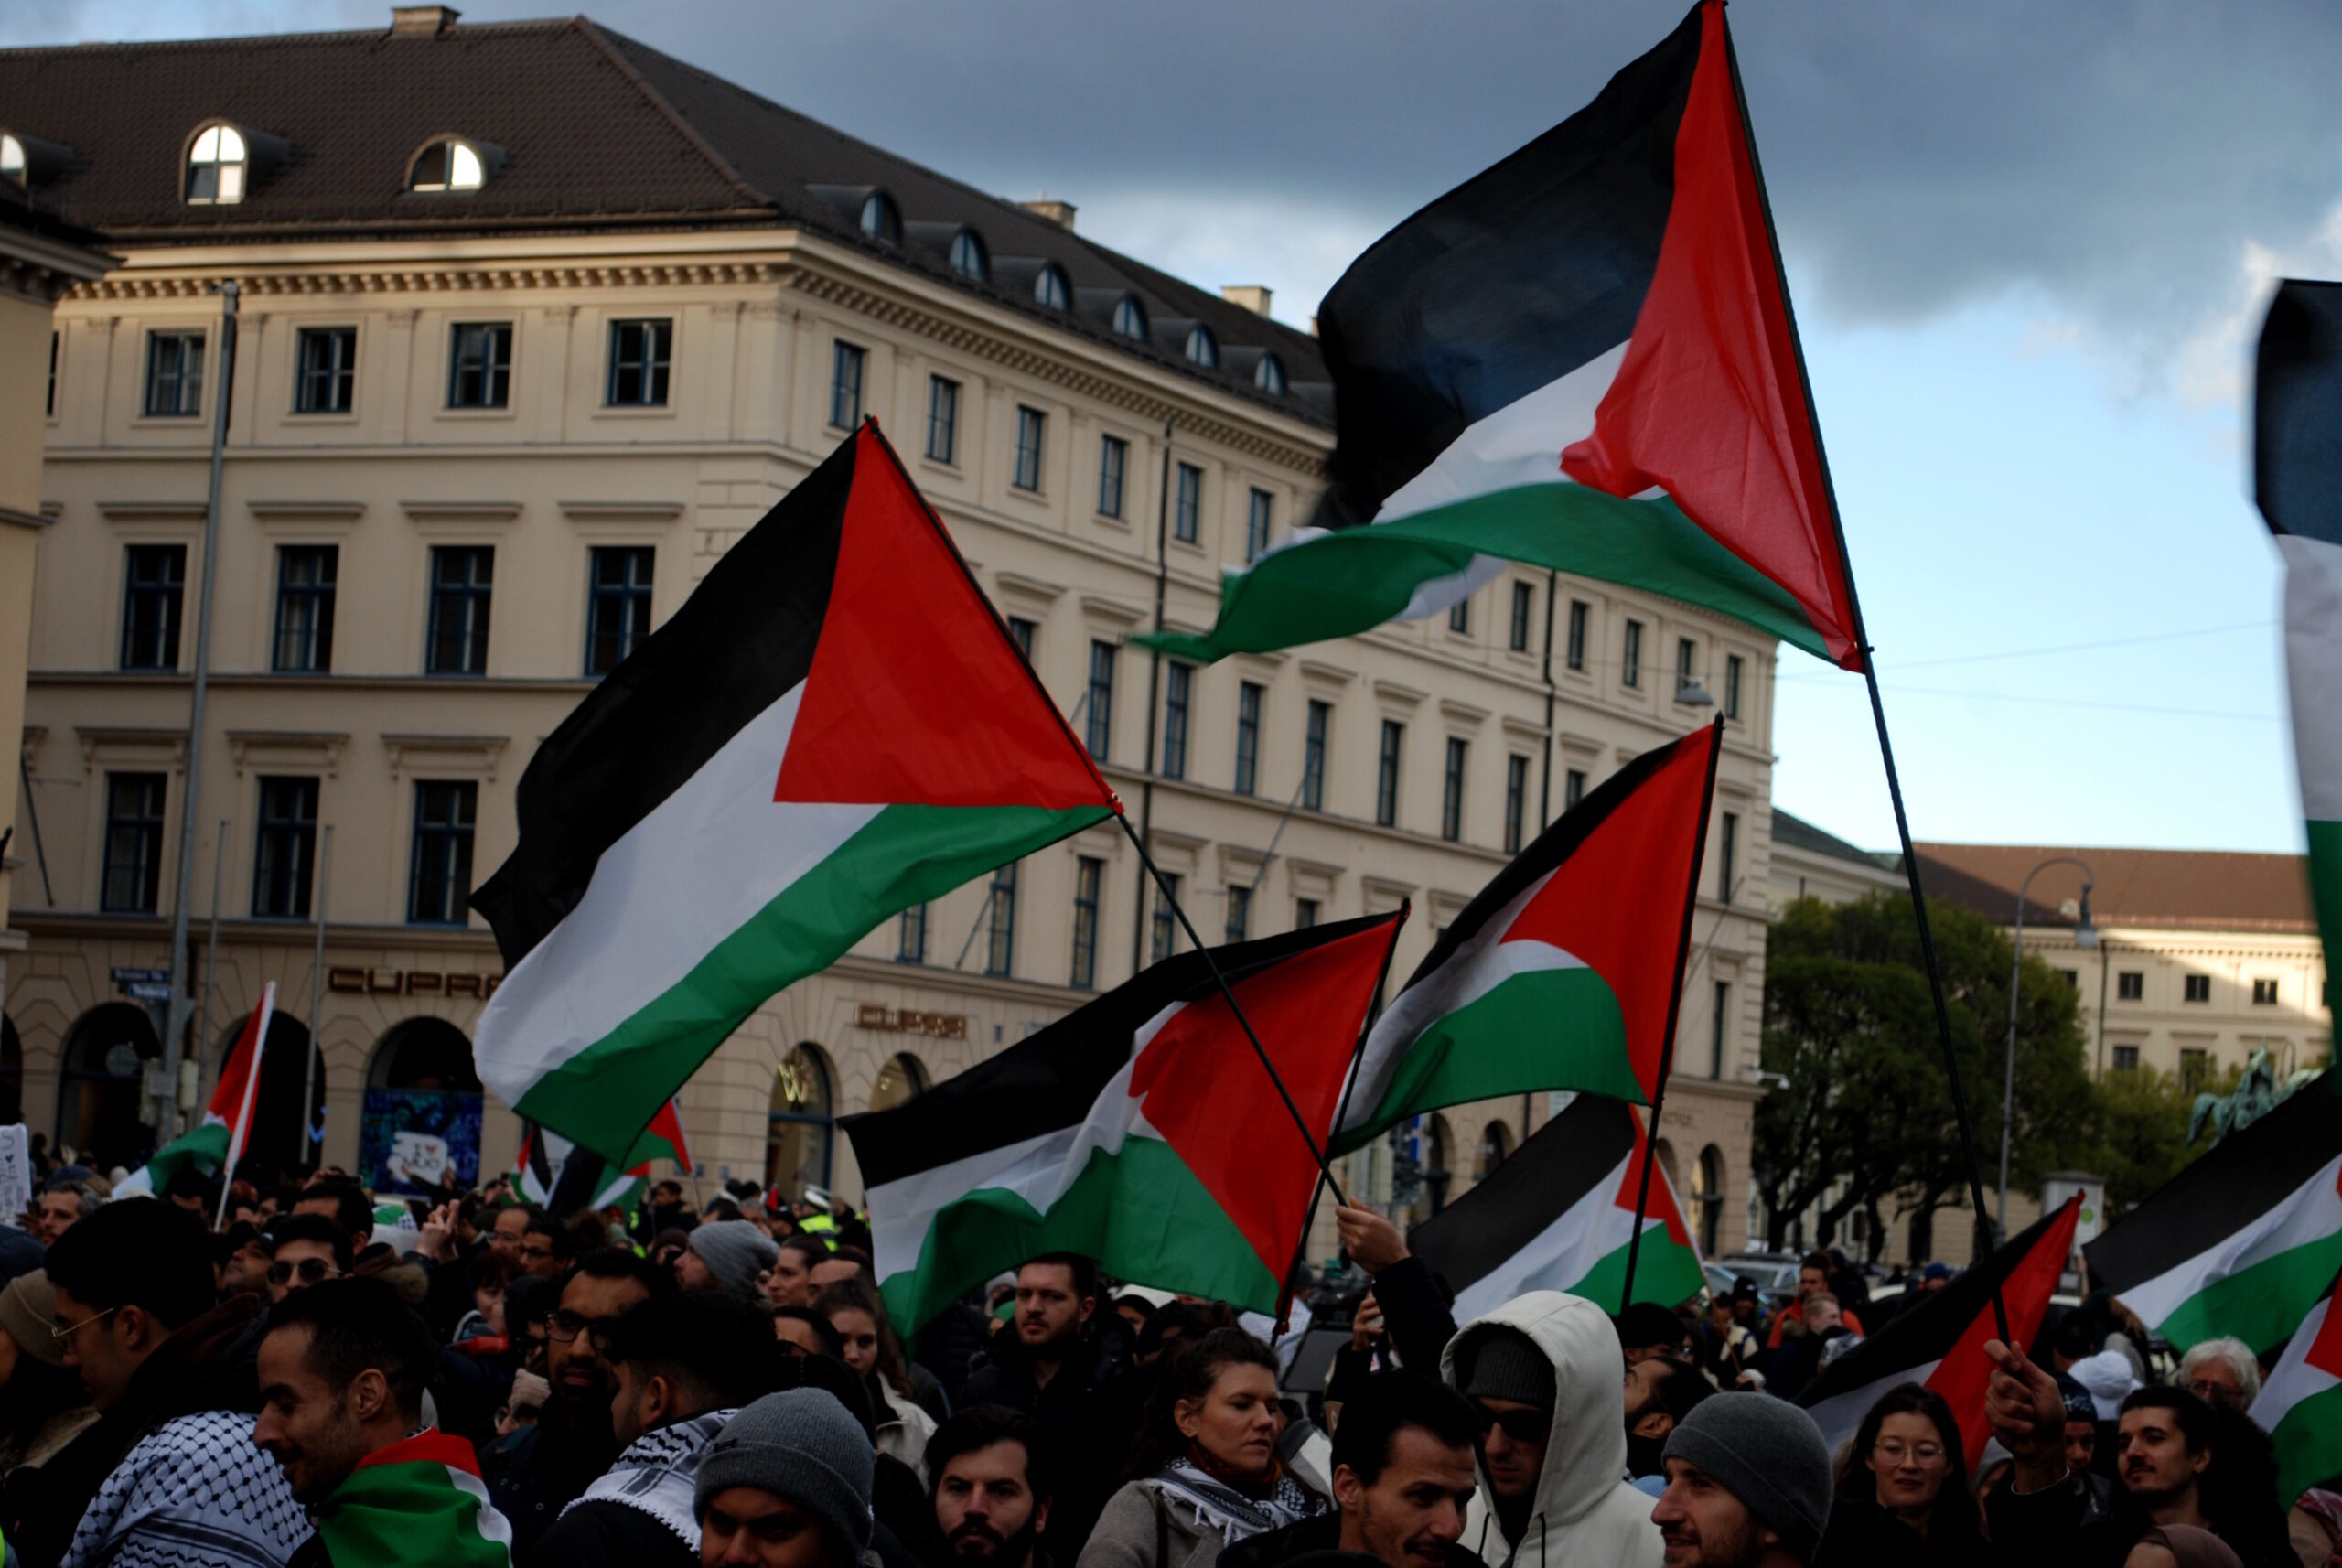 Bauen wir ein Hochschulkomitee für Palästina in München auf!